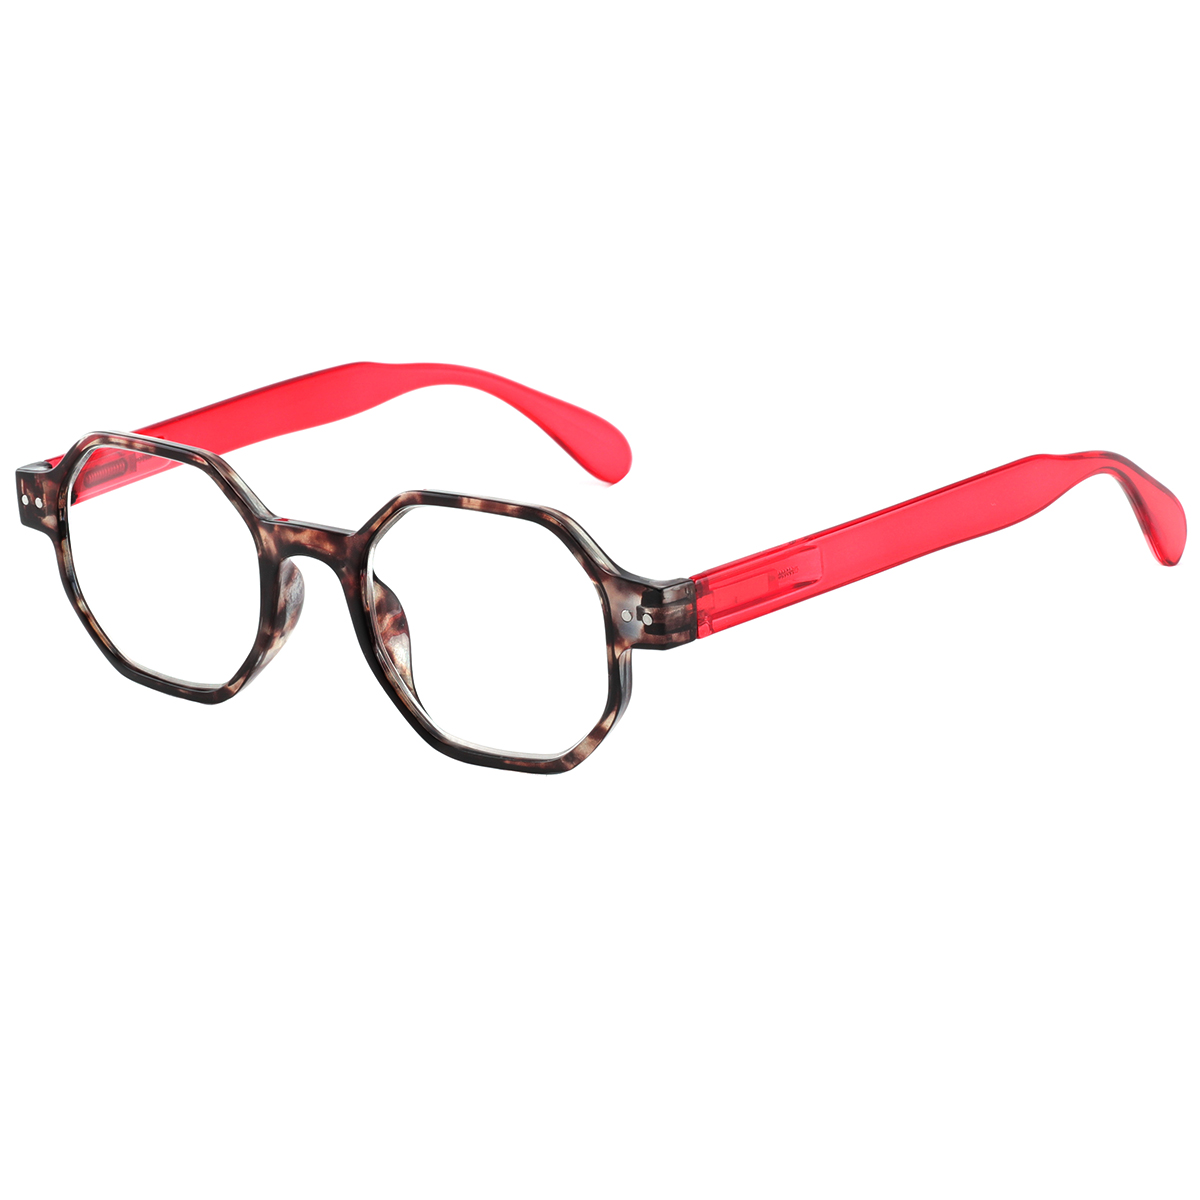 Deva - Geometric Demi-Red Reading Glasses for Women